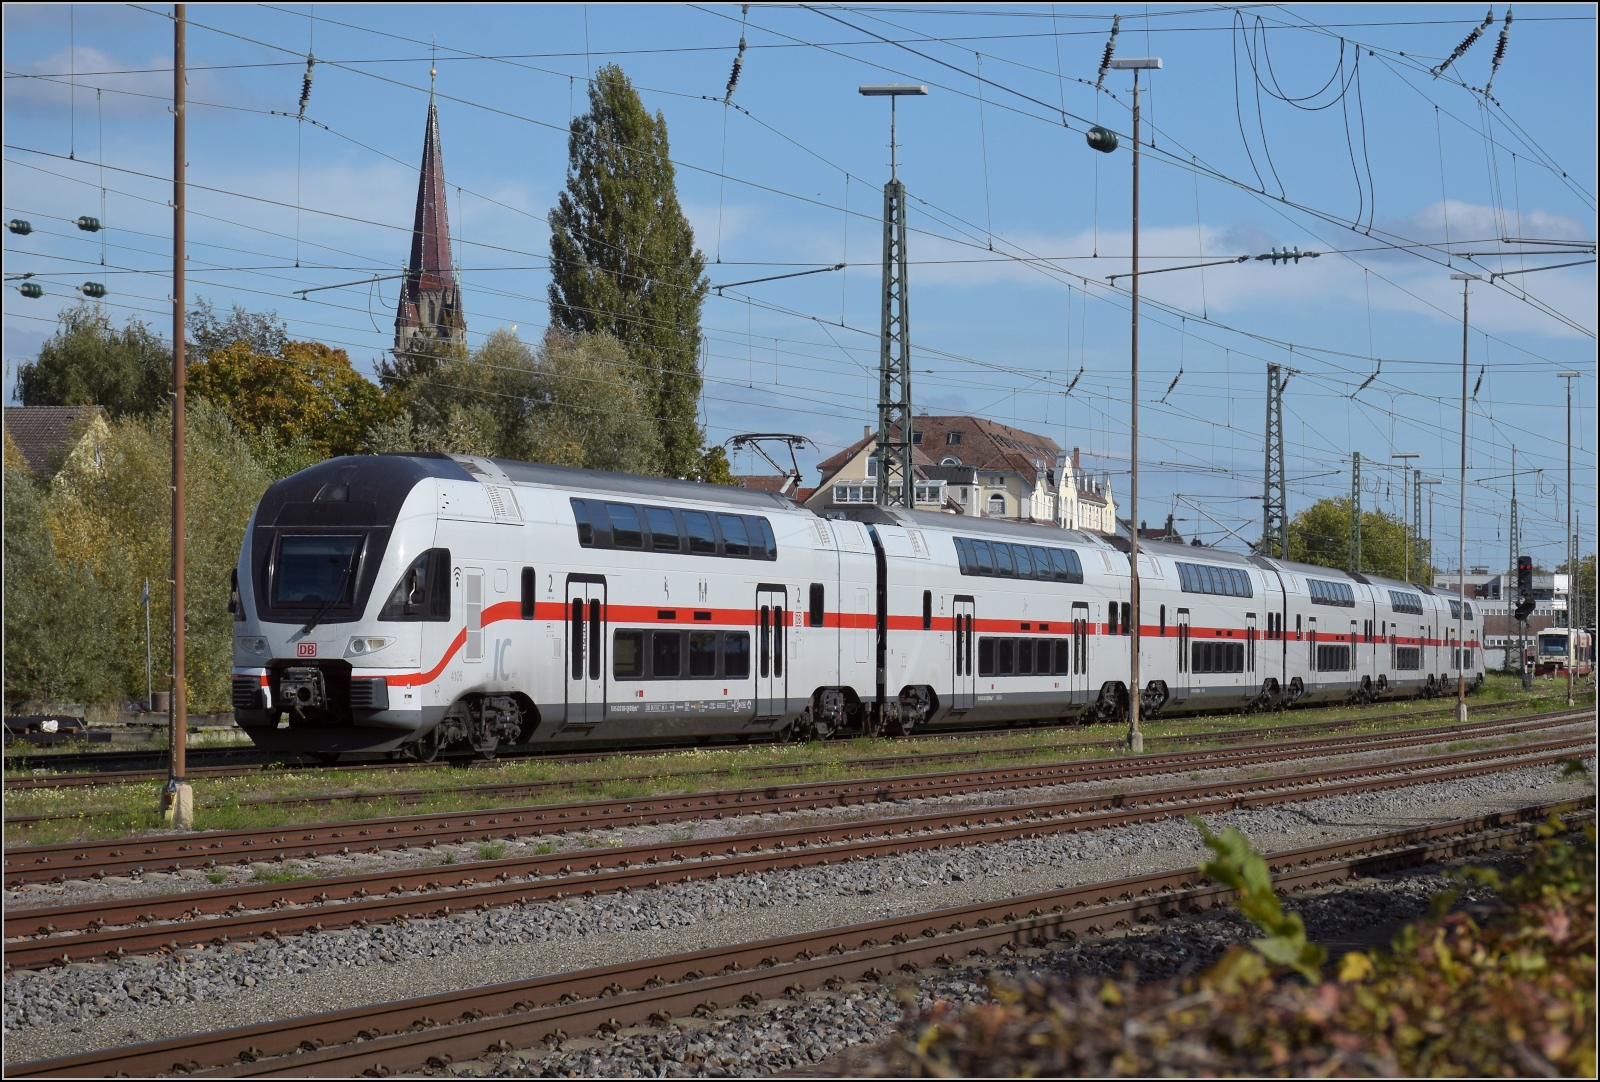 Die künftige Gäubahn ab Fahrplanwechsel. 

Es sollen die ehemaligen Westbahnzüge eingesetzt werden. Hier in Radolfzell steht -mit  Schweizer Parklicht - der IC 4106 mit der vorderen Steuerwagennummer 4010 106.  

Mit voller Nummer lauten die einzelnen Wagen: 
93 85 4010 106-1 <U>CH</U>-DB DBpzfa<SUP> 010.A</SUP> 
93 85 4010 206-9 <U>CH</U>-DB DBpkza<SUP> 010.B</SUP> 
93 85 4010 306-7 <U>CH</U>-DB DBpkza<SUP> 010.C</SUP> 
93 85 4010 406-5 <U>CH</U>-DB DBpbkza<SUP> 010.D</SUP> 
93 85 4010 506-2 <U>CH</U>-DB DBpdkza<SUP> 010.E</SUP> 
93 85 4010 606-0 <U>CH</U>-DB DApzfa<SUP> 010.F</SUP> 

Interessant ist dabei die Nummer nach dem österreichischen Elektro-Triebwagennummern in den Viertausenderzahlen, die Immatrikulierung im Schweizer Register mit 85 und die deutsche Besitzerin DB. Zugelassen sind die Fahrzeuge in der Schweiz, Österreich und -nach besonderer Vereinbarung- Deutschland.

Die Daten zum Zug hat Armin wunderbar zusammengefasst ( http://igschieneschweiz.startbilder.de/bild/schweiz~triebzuege~spezifikationen-der-baureihen/787881/der-sechsteilige-stadler-kiss179-4010-029.html ), das dürfte sich mit dem anderen Farbkleid nicht geändert haben, außer der Anzahl Sitzplätze, die nunmehr mit 486 angegeben wird.

Oktober 2022.